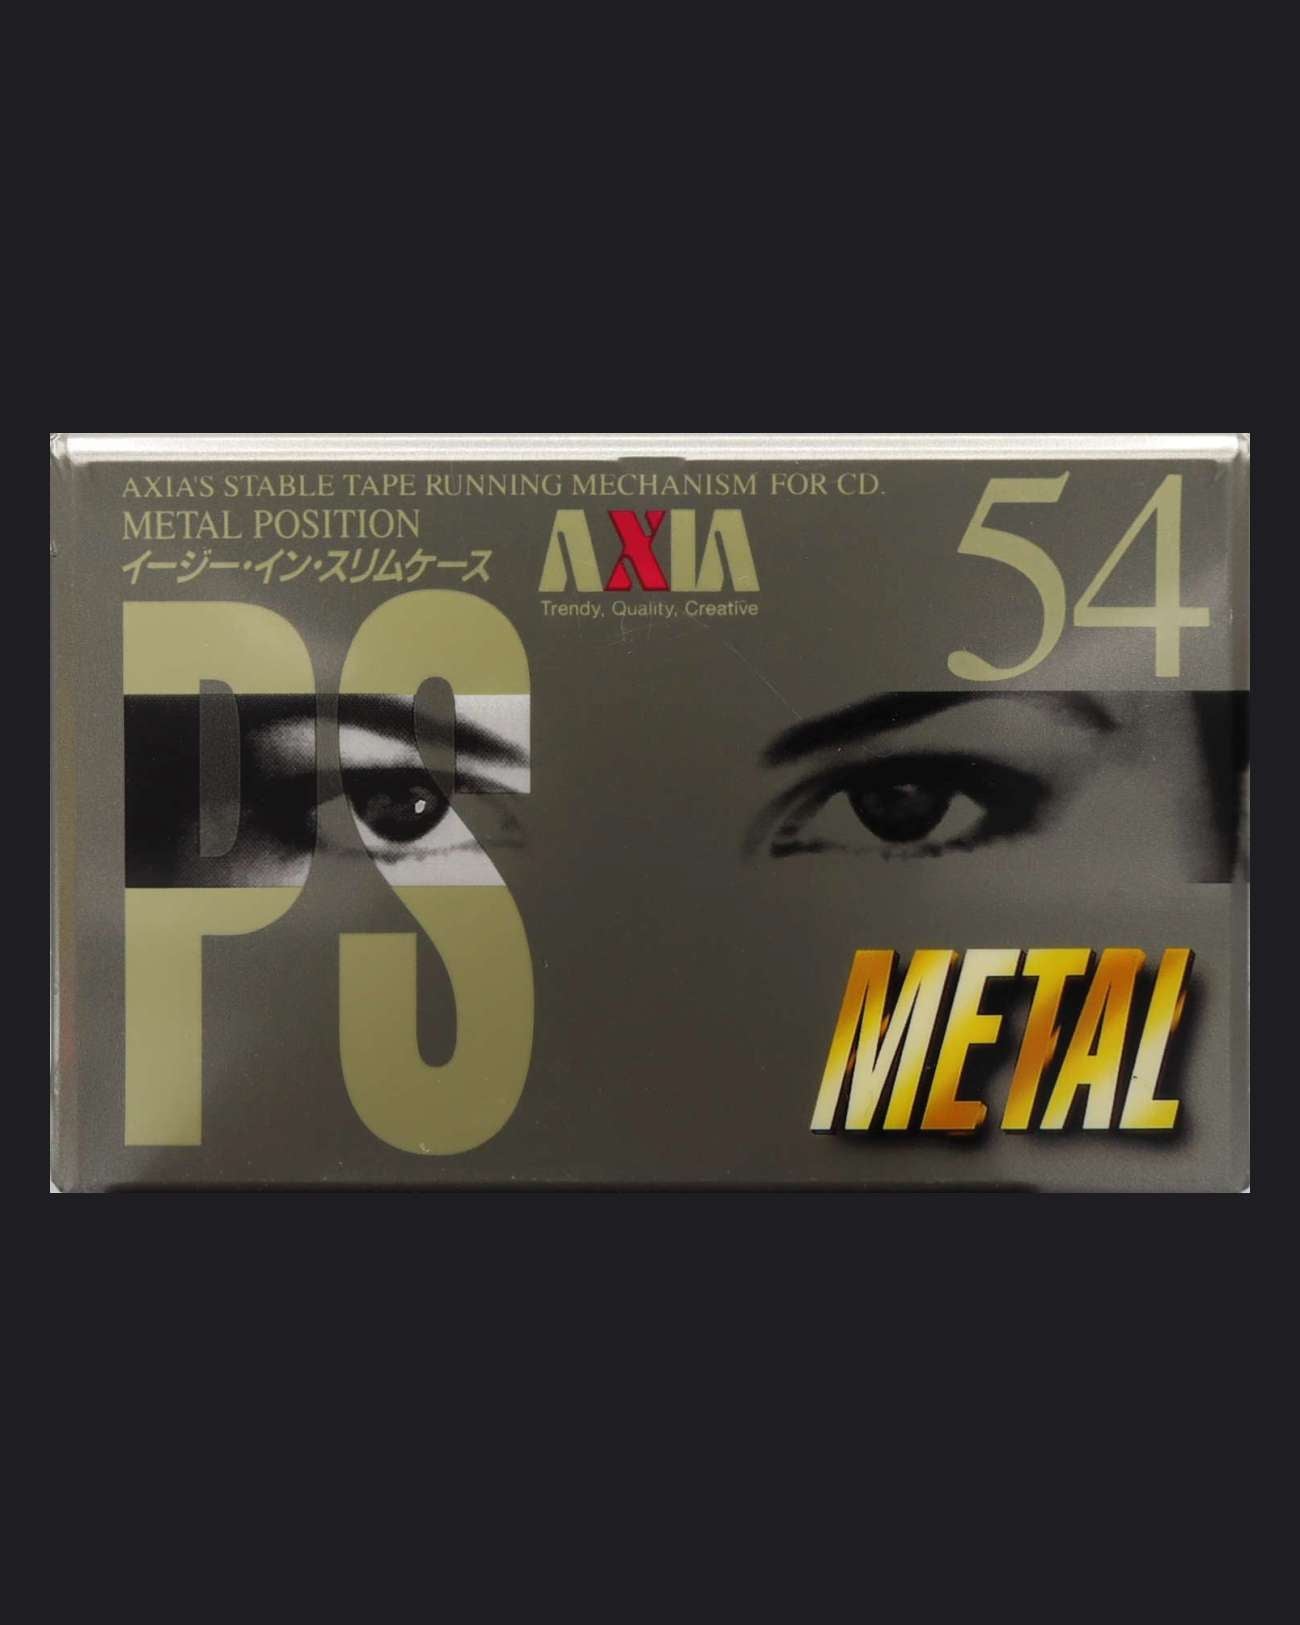 AXIA PS-Metal (1995 JP)